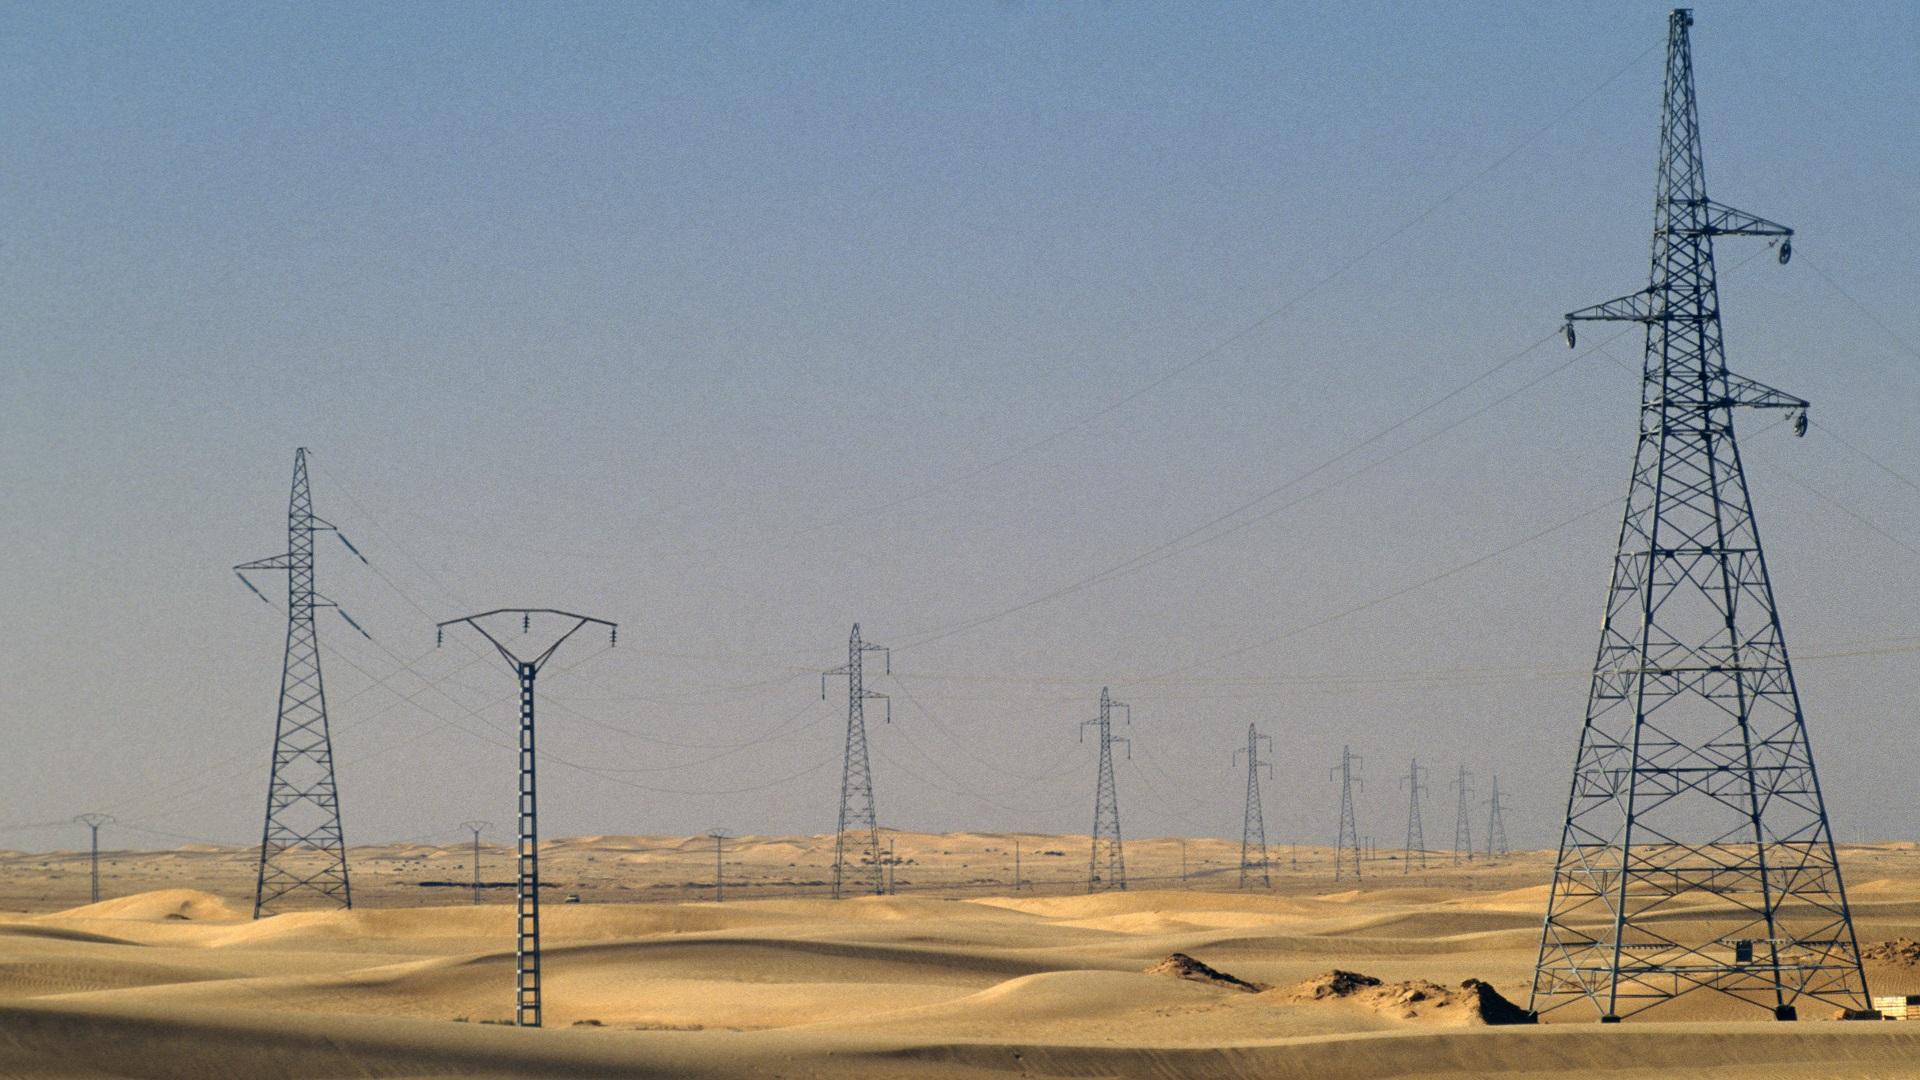 السعودية للكهرباء تقترض 568 مليون دولار لمشروع الربط مع مصر